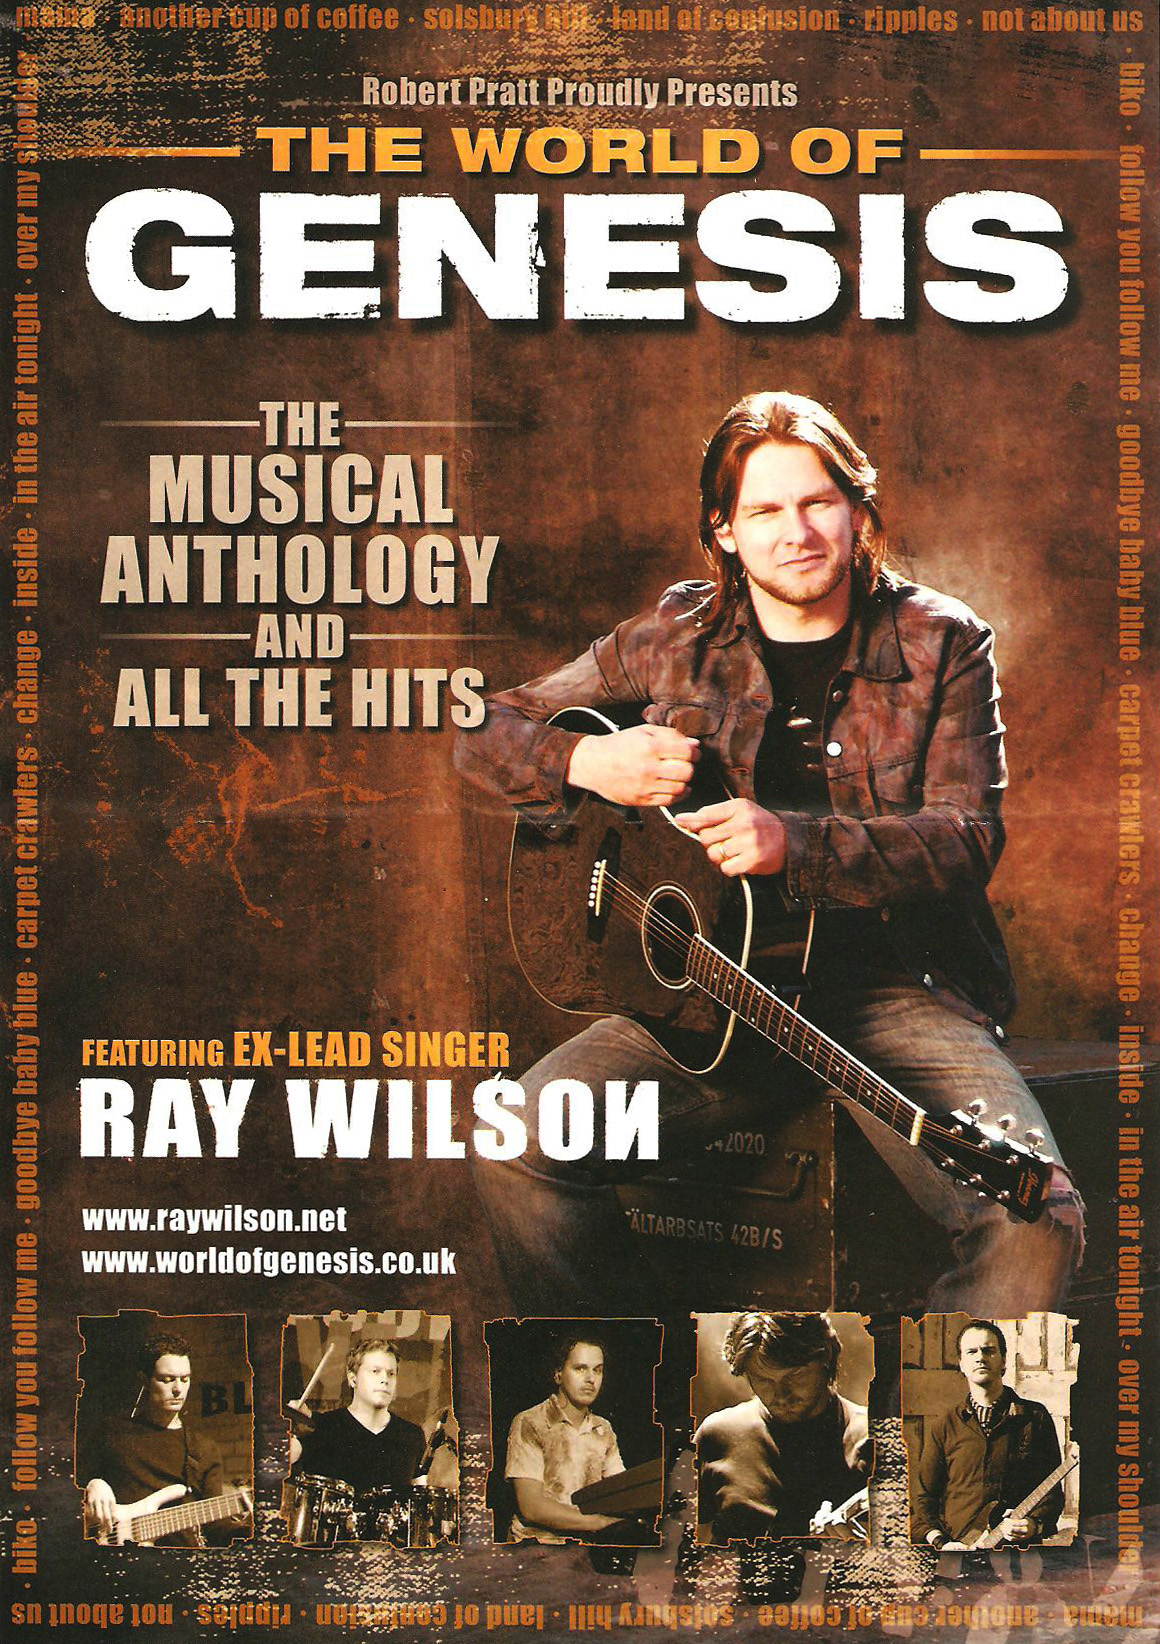 ray wilson genesis tour